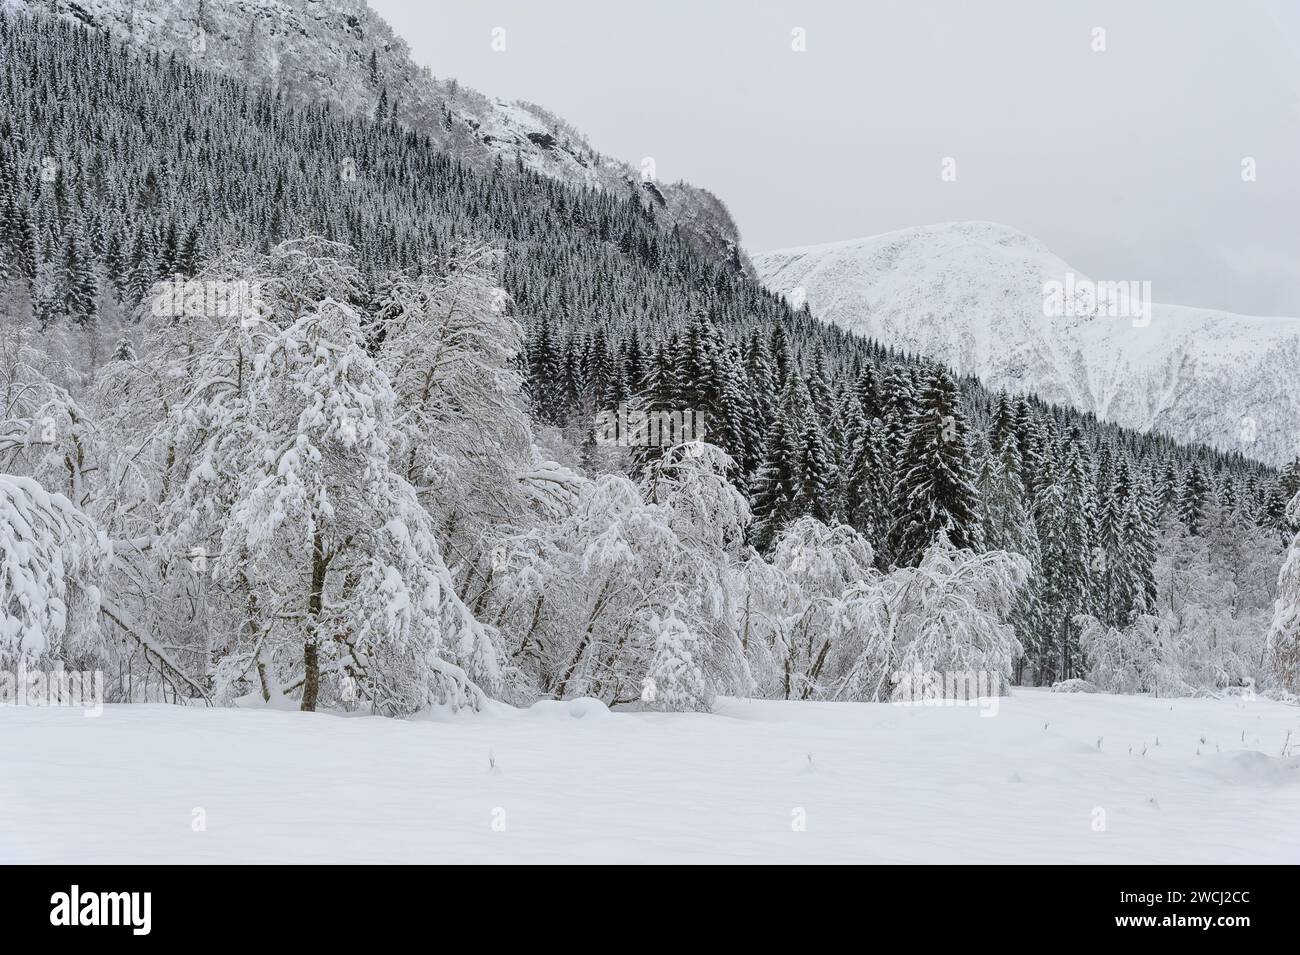 Eine ruhige Landschaft fängt die Ruhe eines Waldes und einer Bergkette mit frischem, ungestörtem Schnee ein. Stockfoto